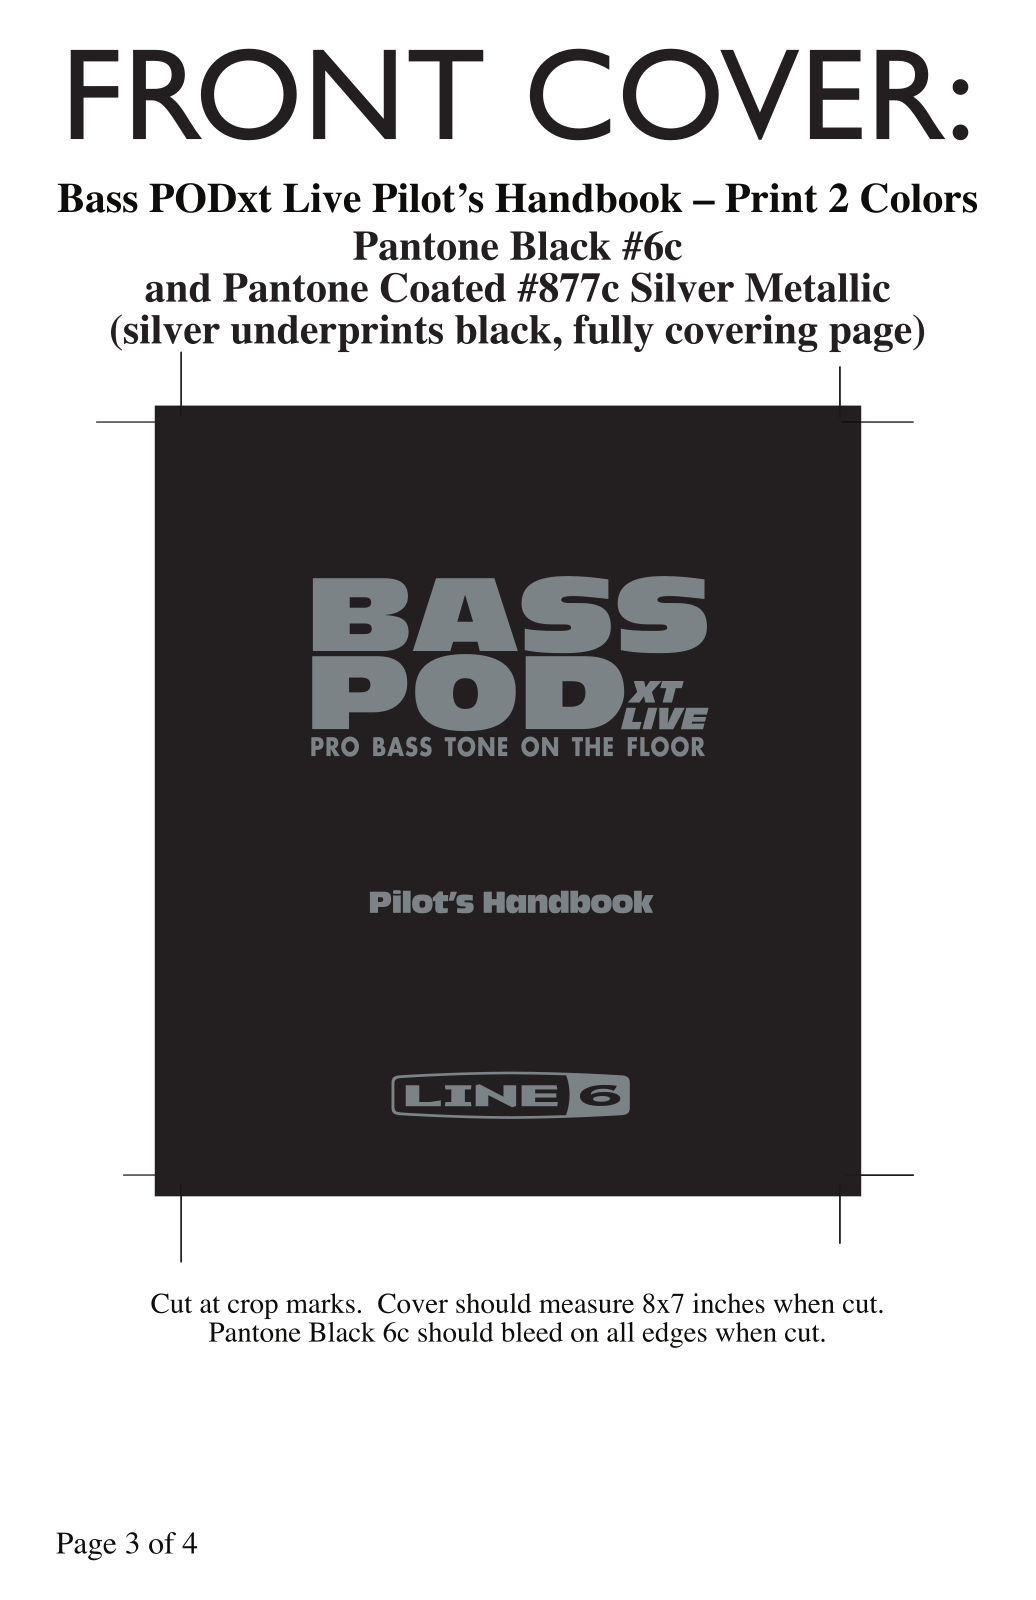 Line 6 Bass POD xt Live User Manual